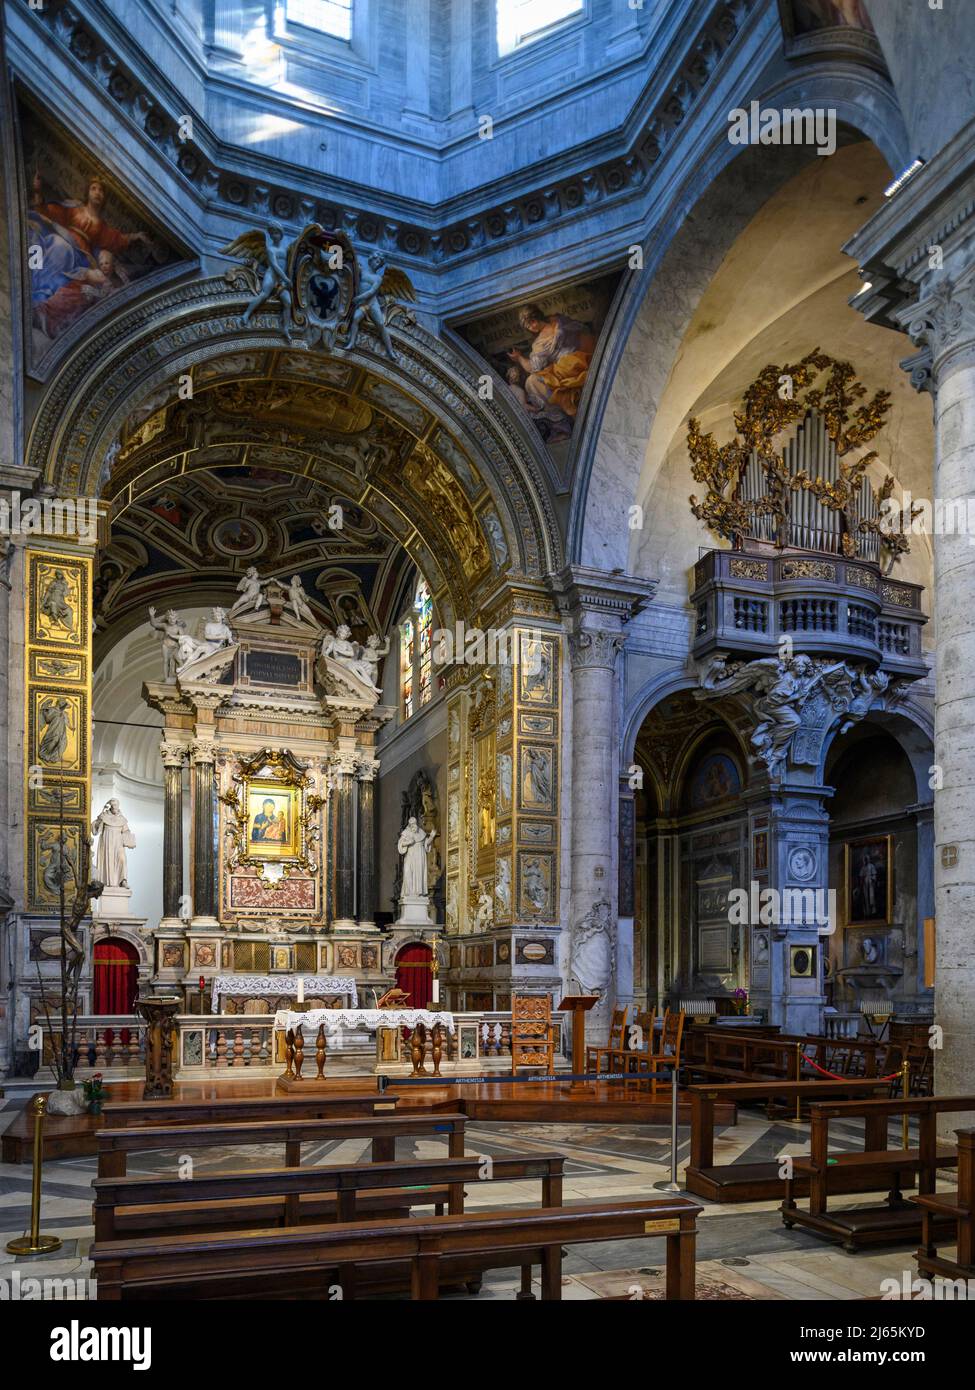 Roma. Italia. Basílica de Santa María del Popolo. Vista interior que muestra el altar mayor y el arco triunfal y el crucero derecho. Foto de stock